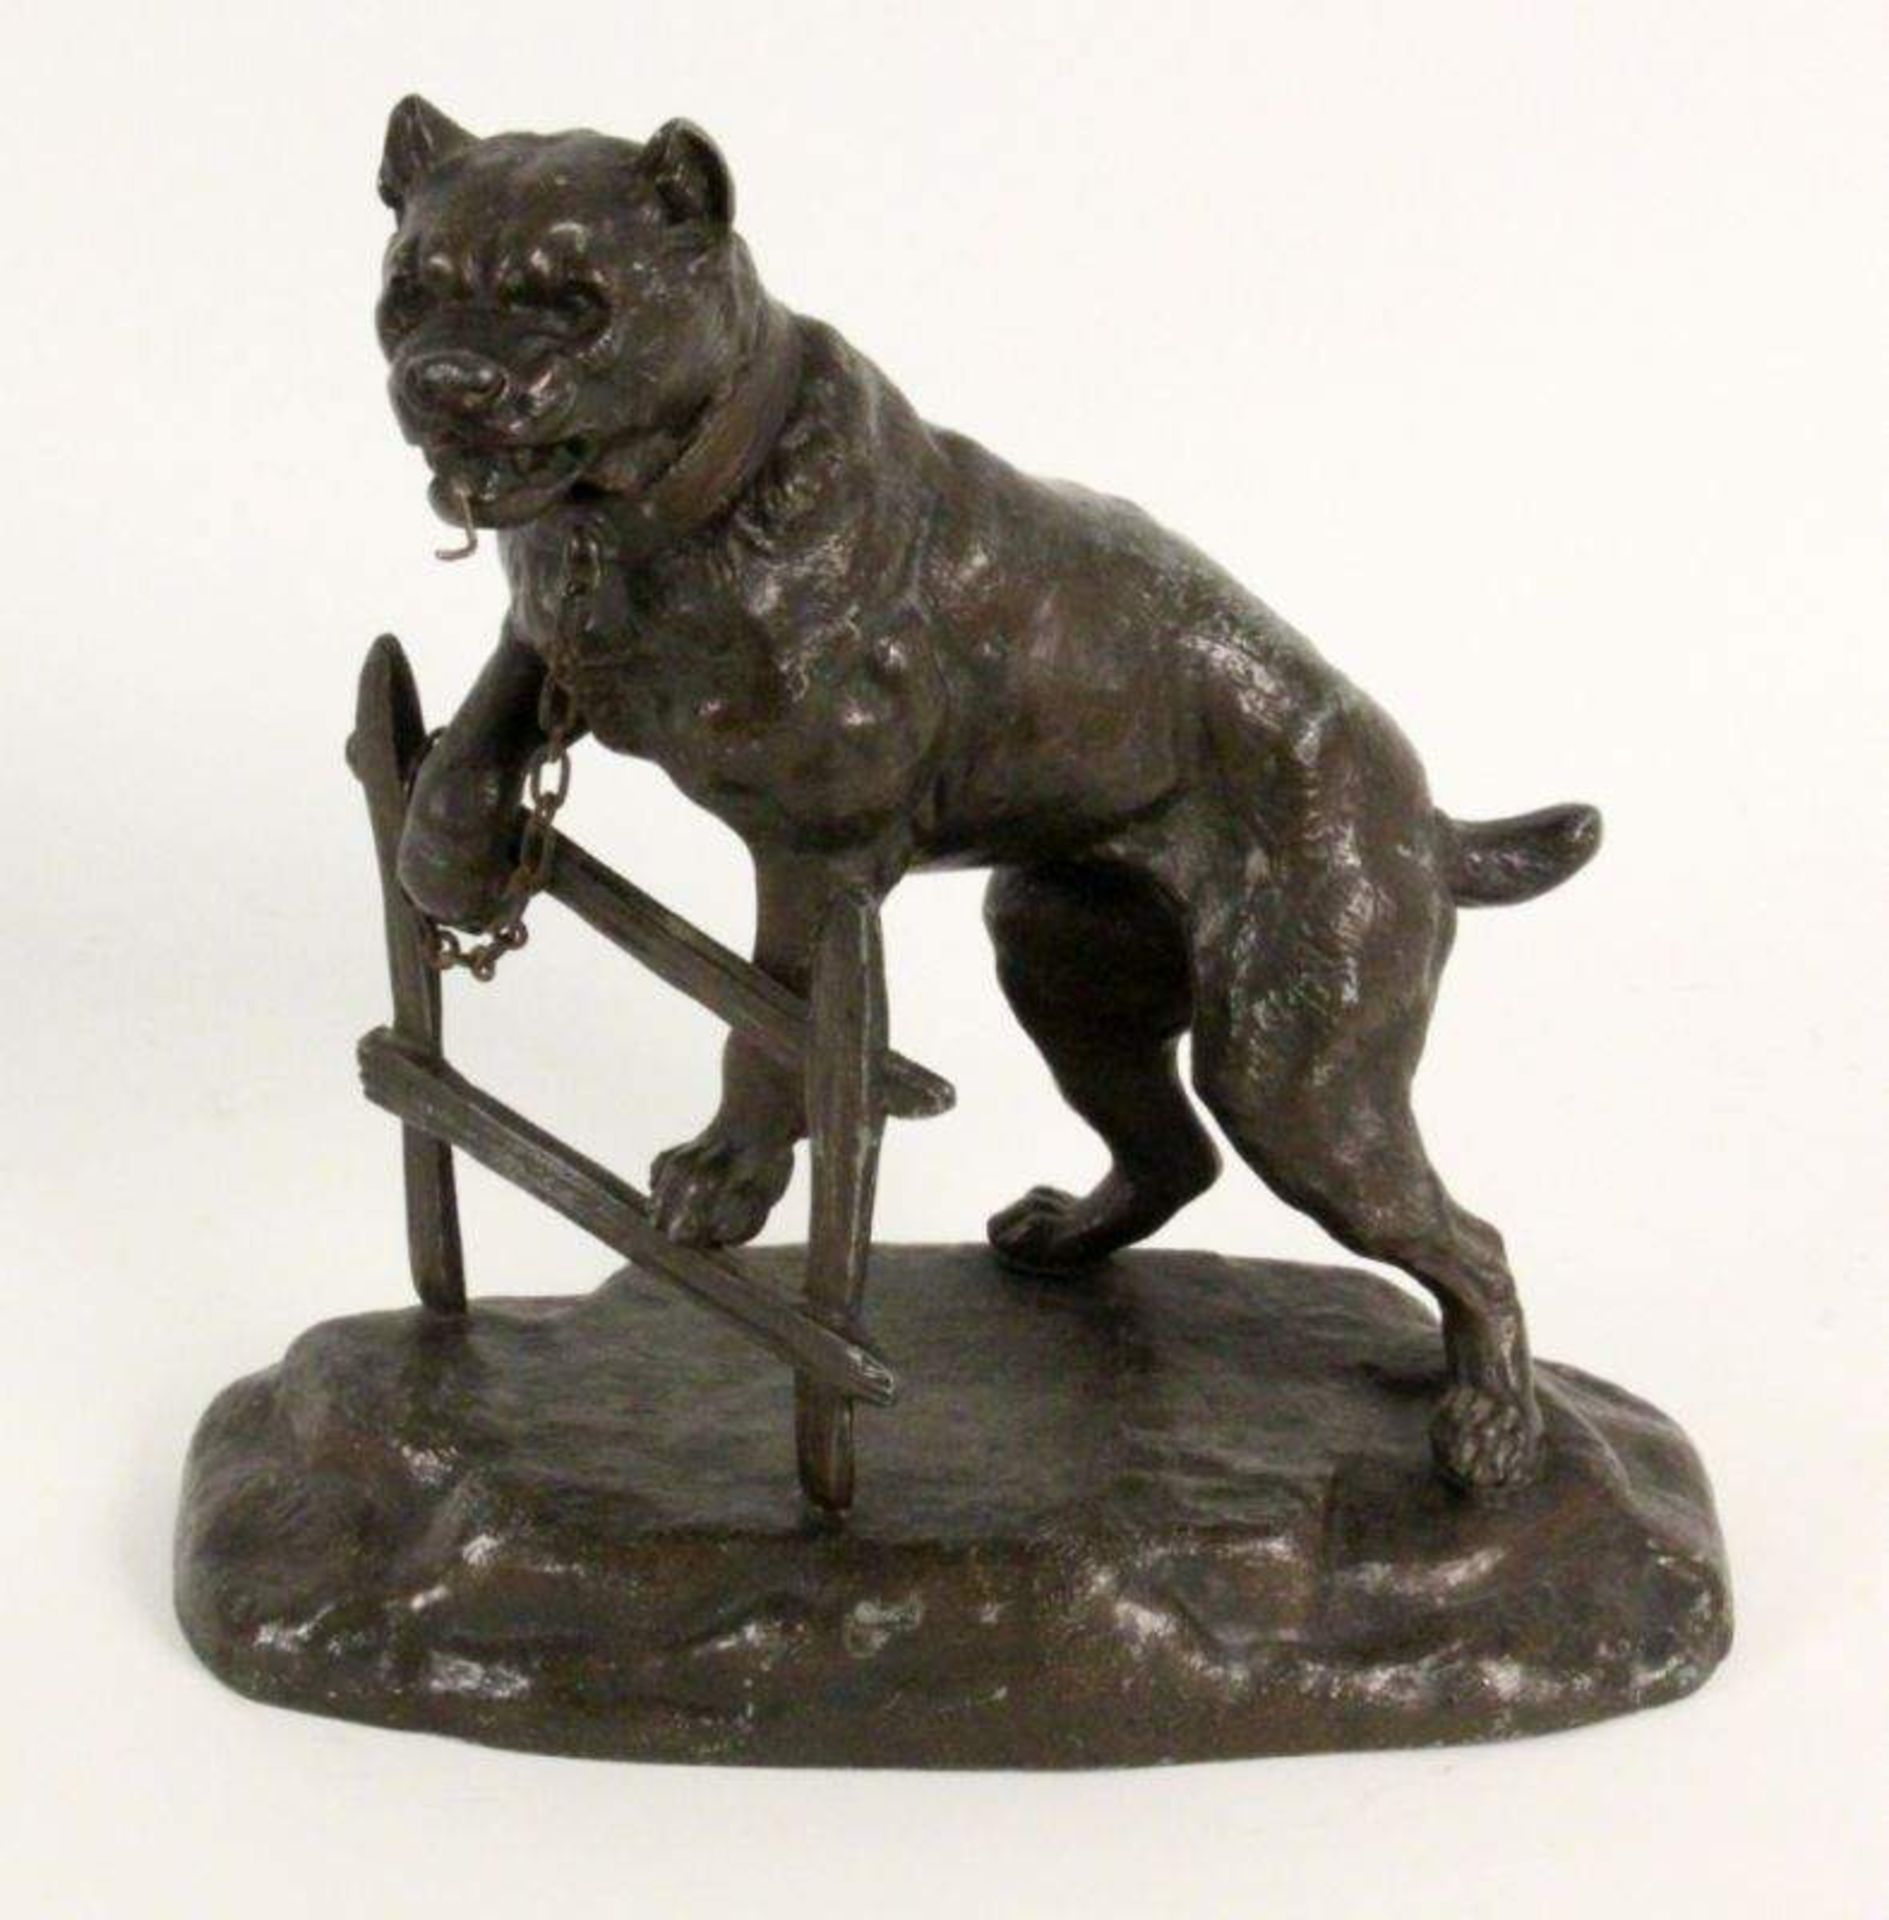 WACHHUND ALS TASCHENUHRENSTÄNDERFrankreich um 1900 Patinierter Metallguß eines angeketteten Hundes